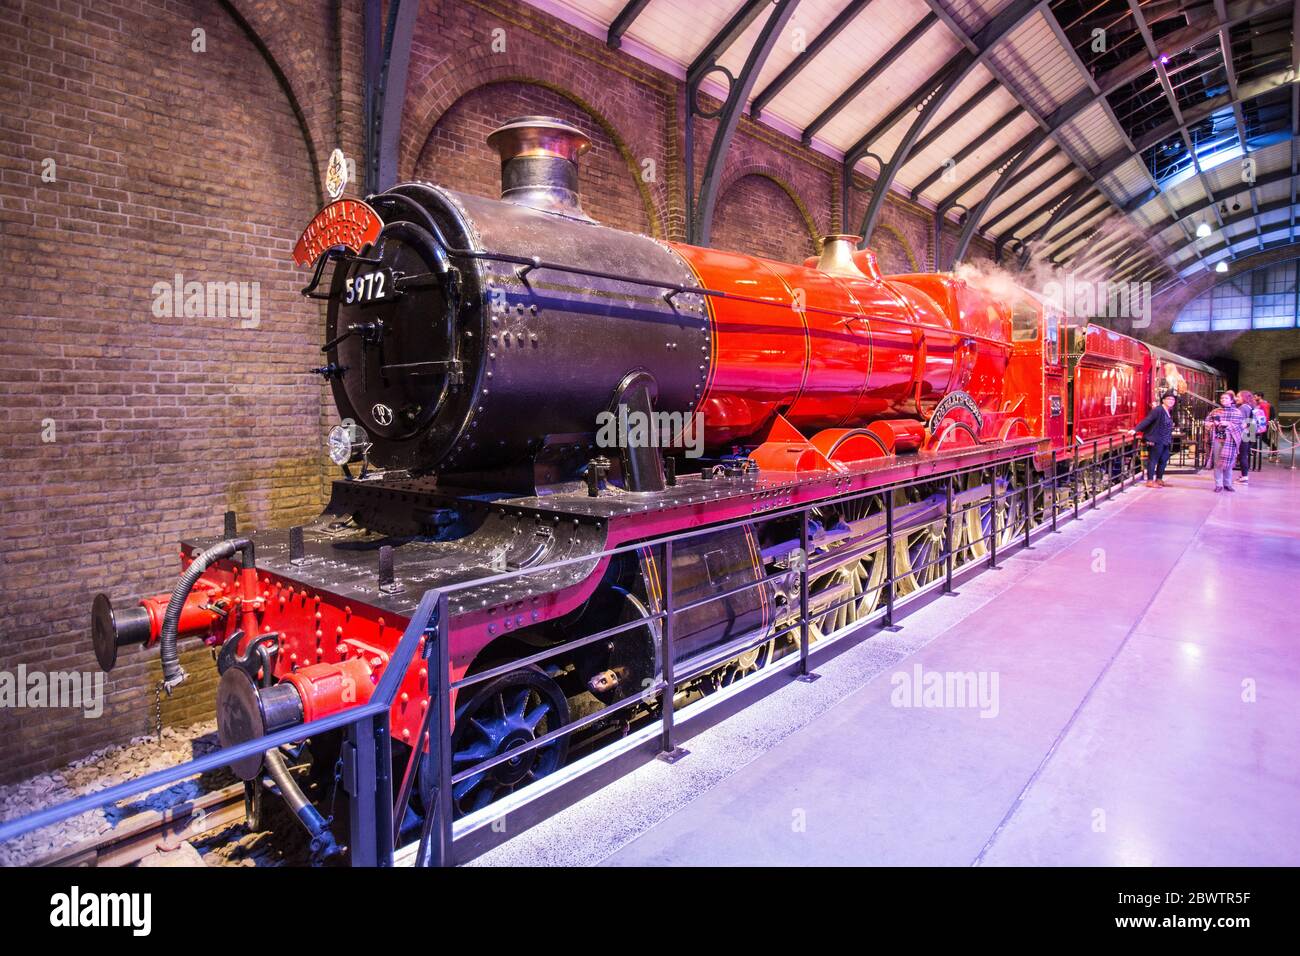 Le train de Poudlard Express sur le plateau de la plate-forme 9 3/4, Harry Potter, tour de studio, coulisses, objets, usine de cinéma, studios, Londres, Royaume-Uni Banque D'Images